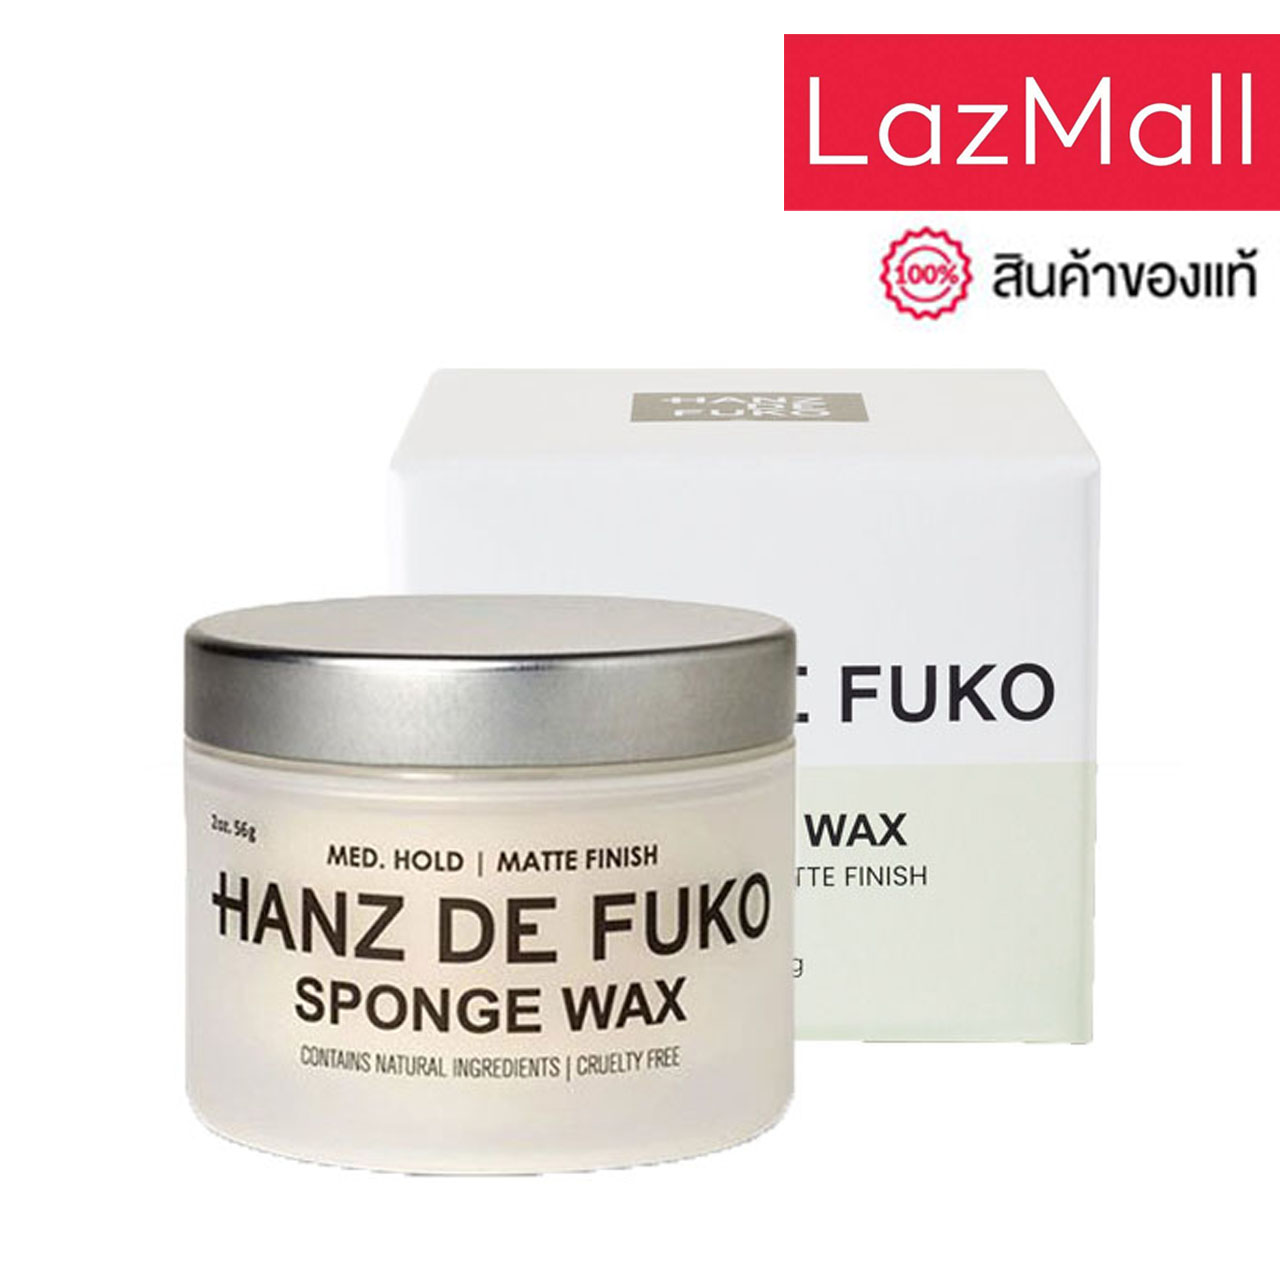 Hanz de Fuko - Sponge Wax(2 oz / 56 ml) ผลิตภัณฑ์จัดแต่งทรงผม